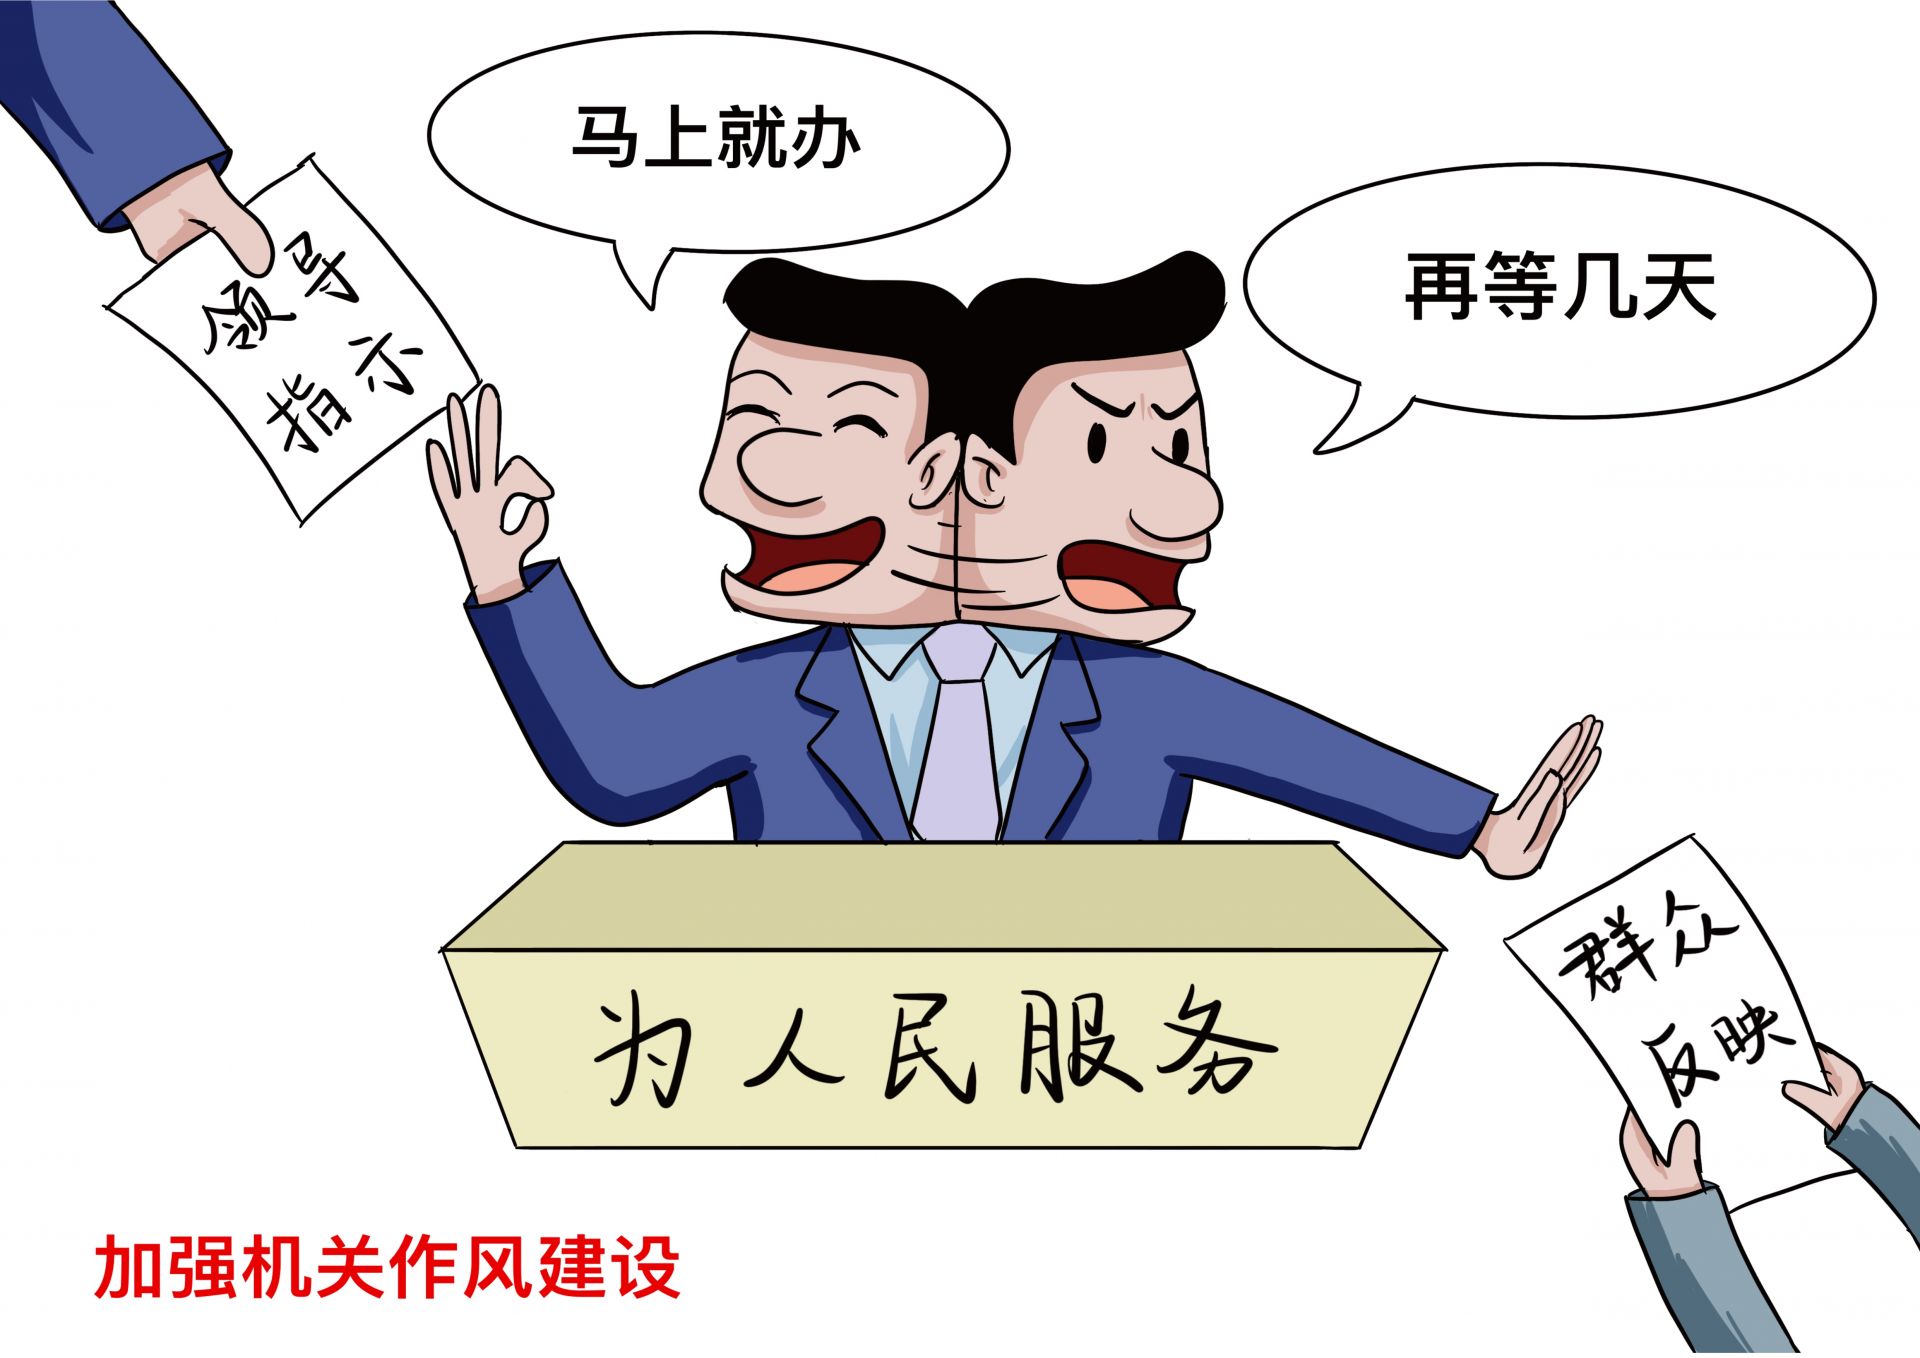 广西纪检监察干部“十自觉、十严禁”漫画